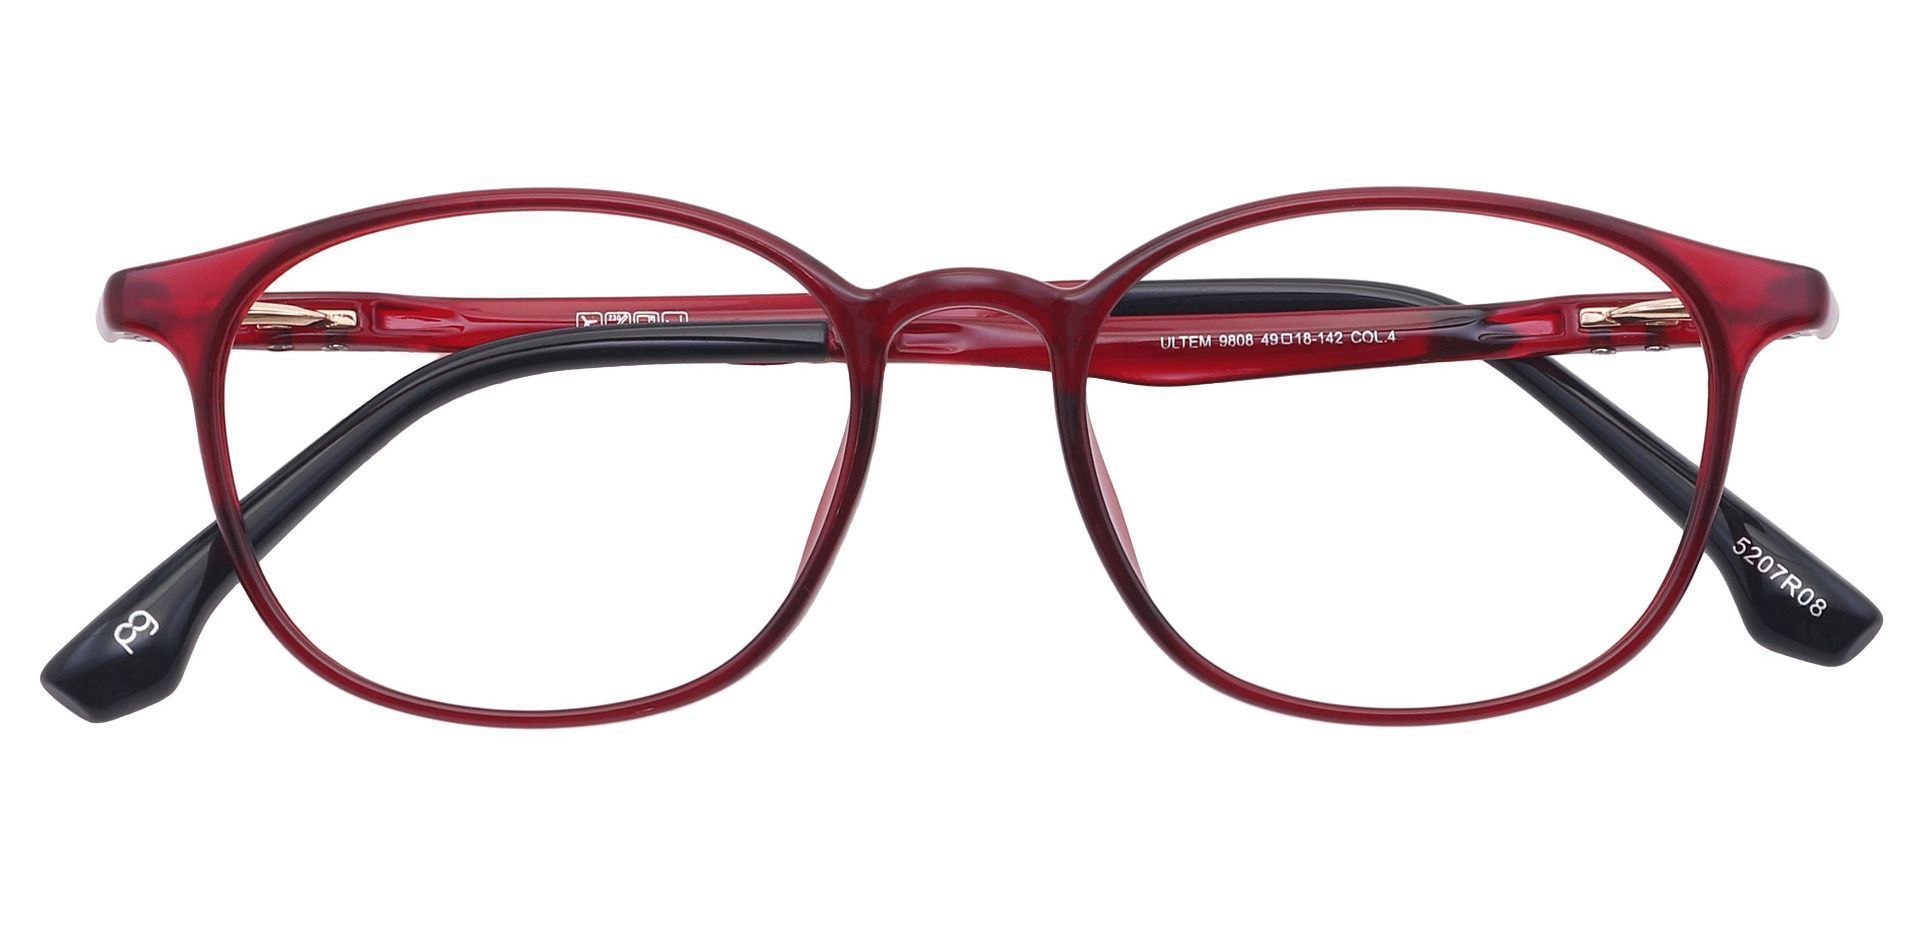 Shannon Oval Prescription Glasses - Red